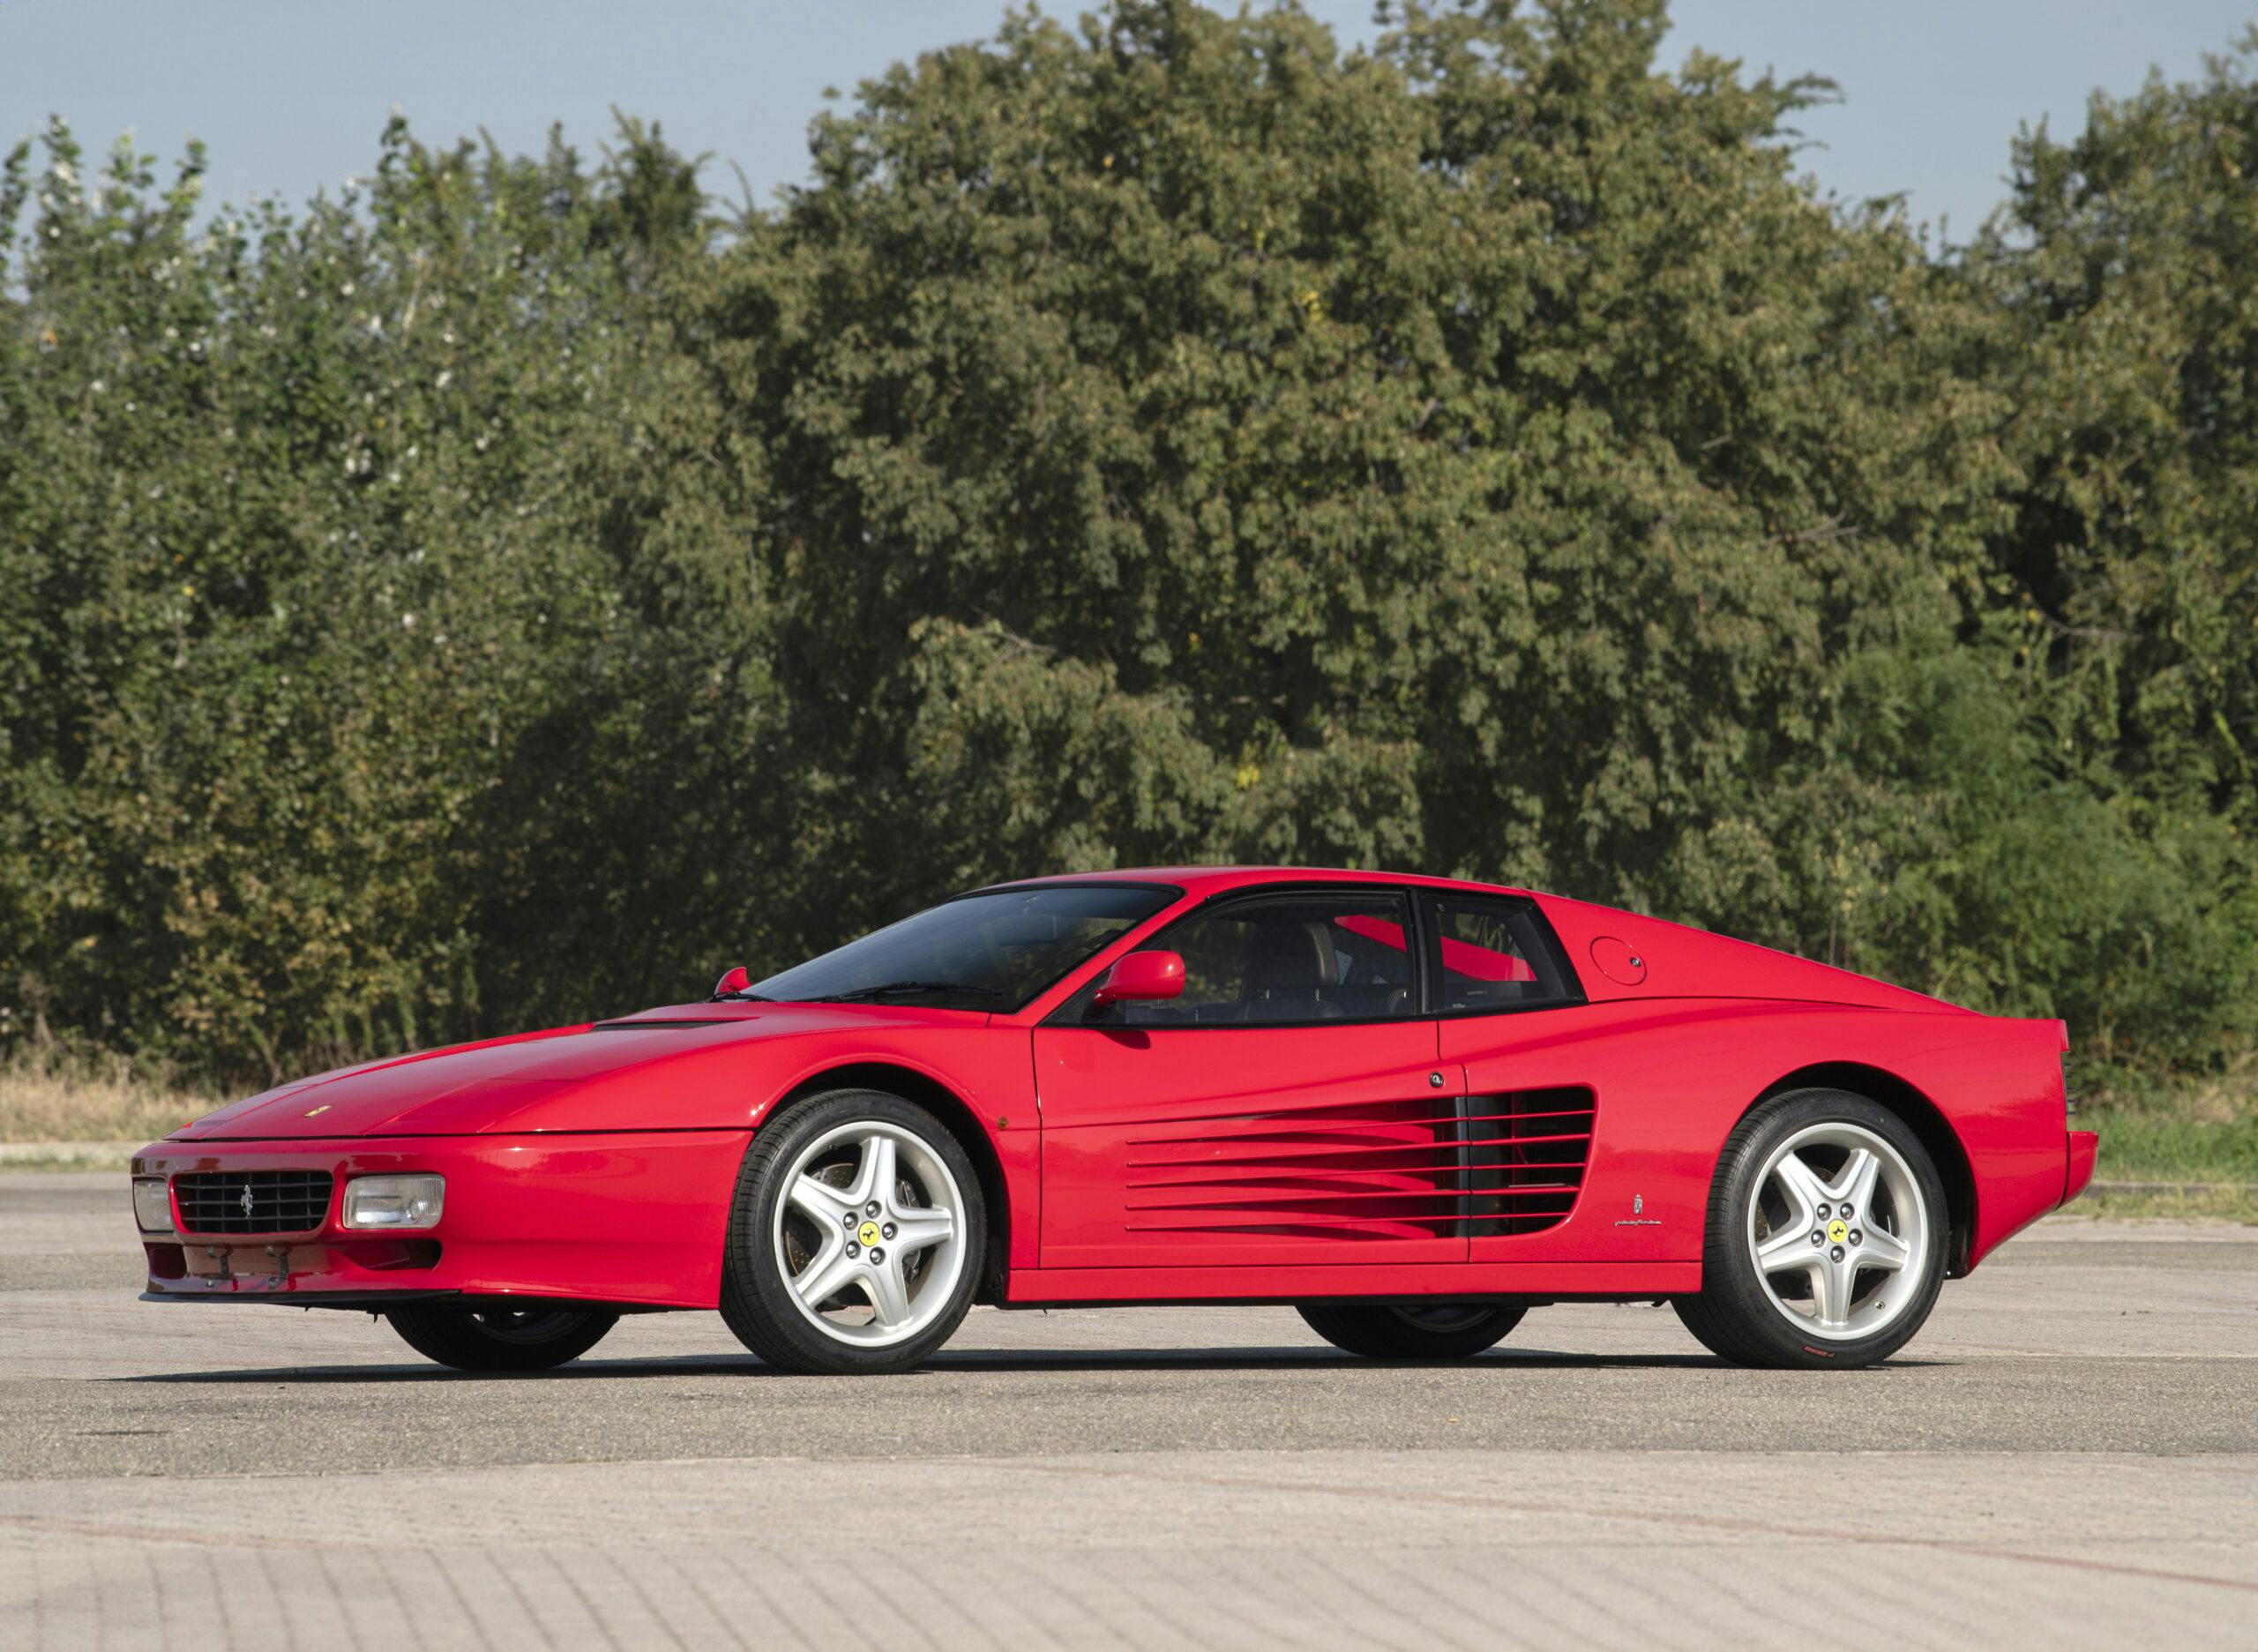 1992-Ferrari-512-TR